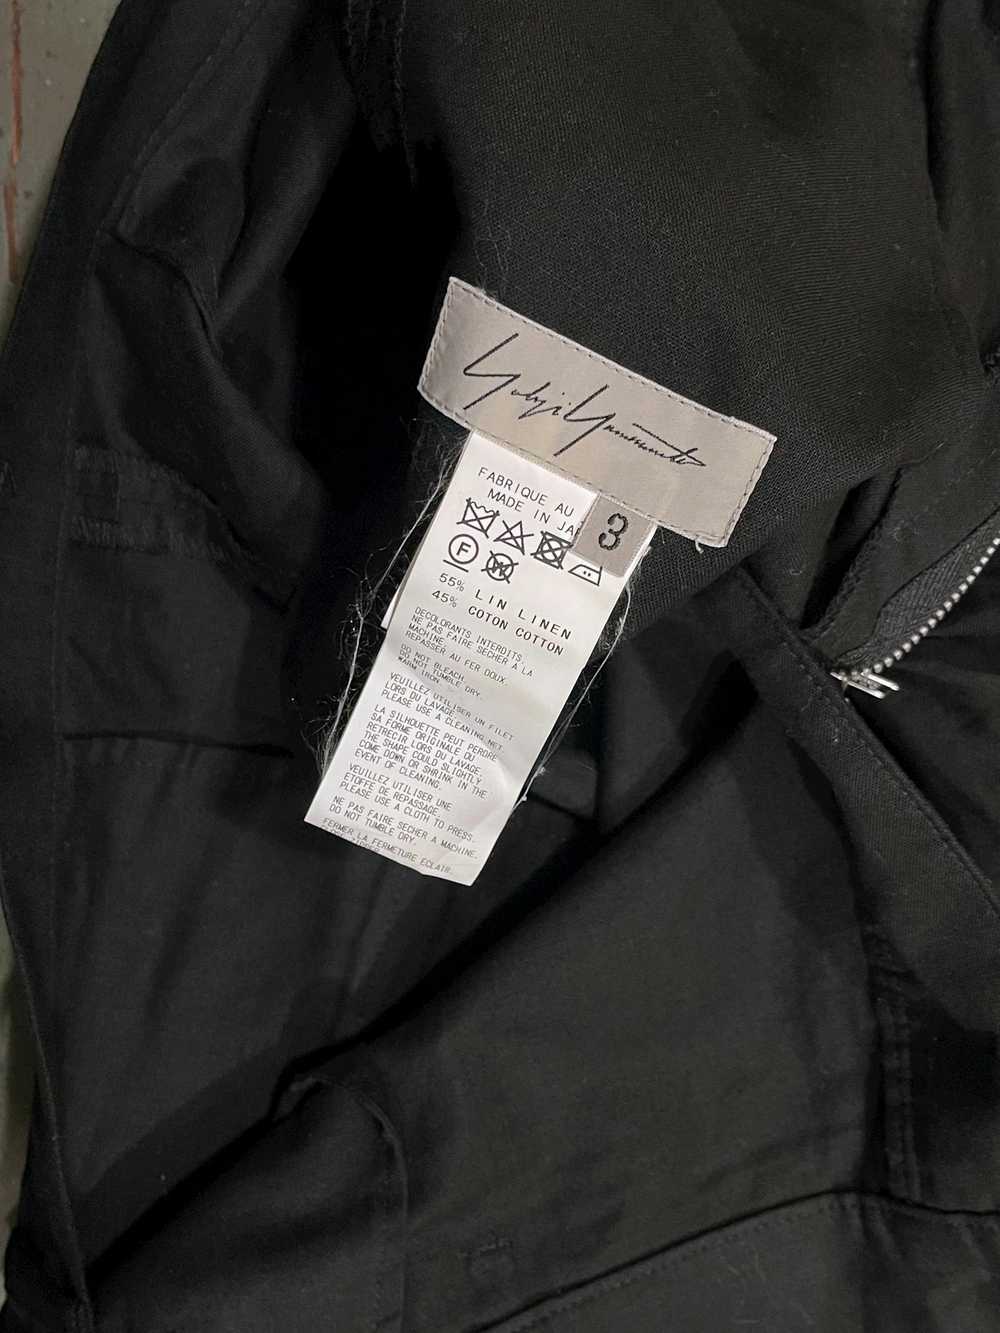 Yohji Yamamoto SS17 Runway Cotton/Linen Shorts - image 4